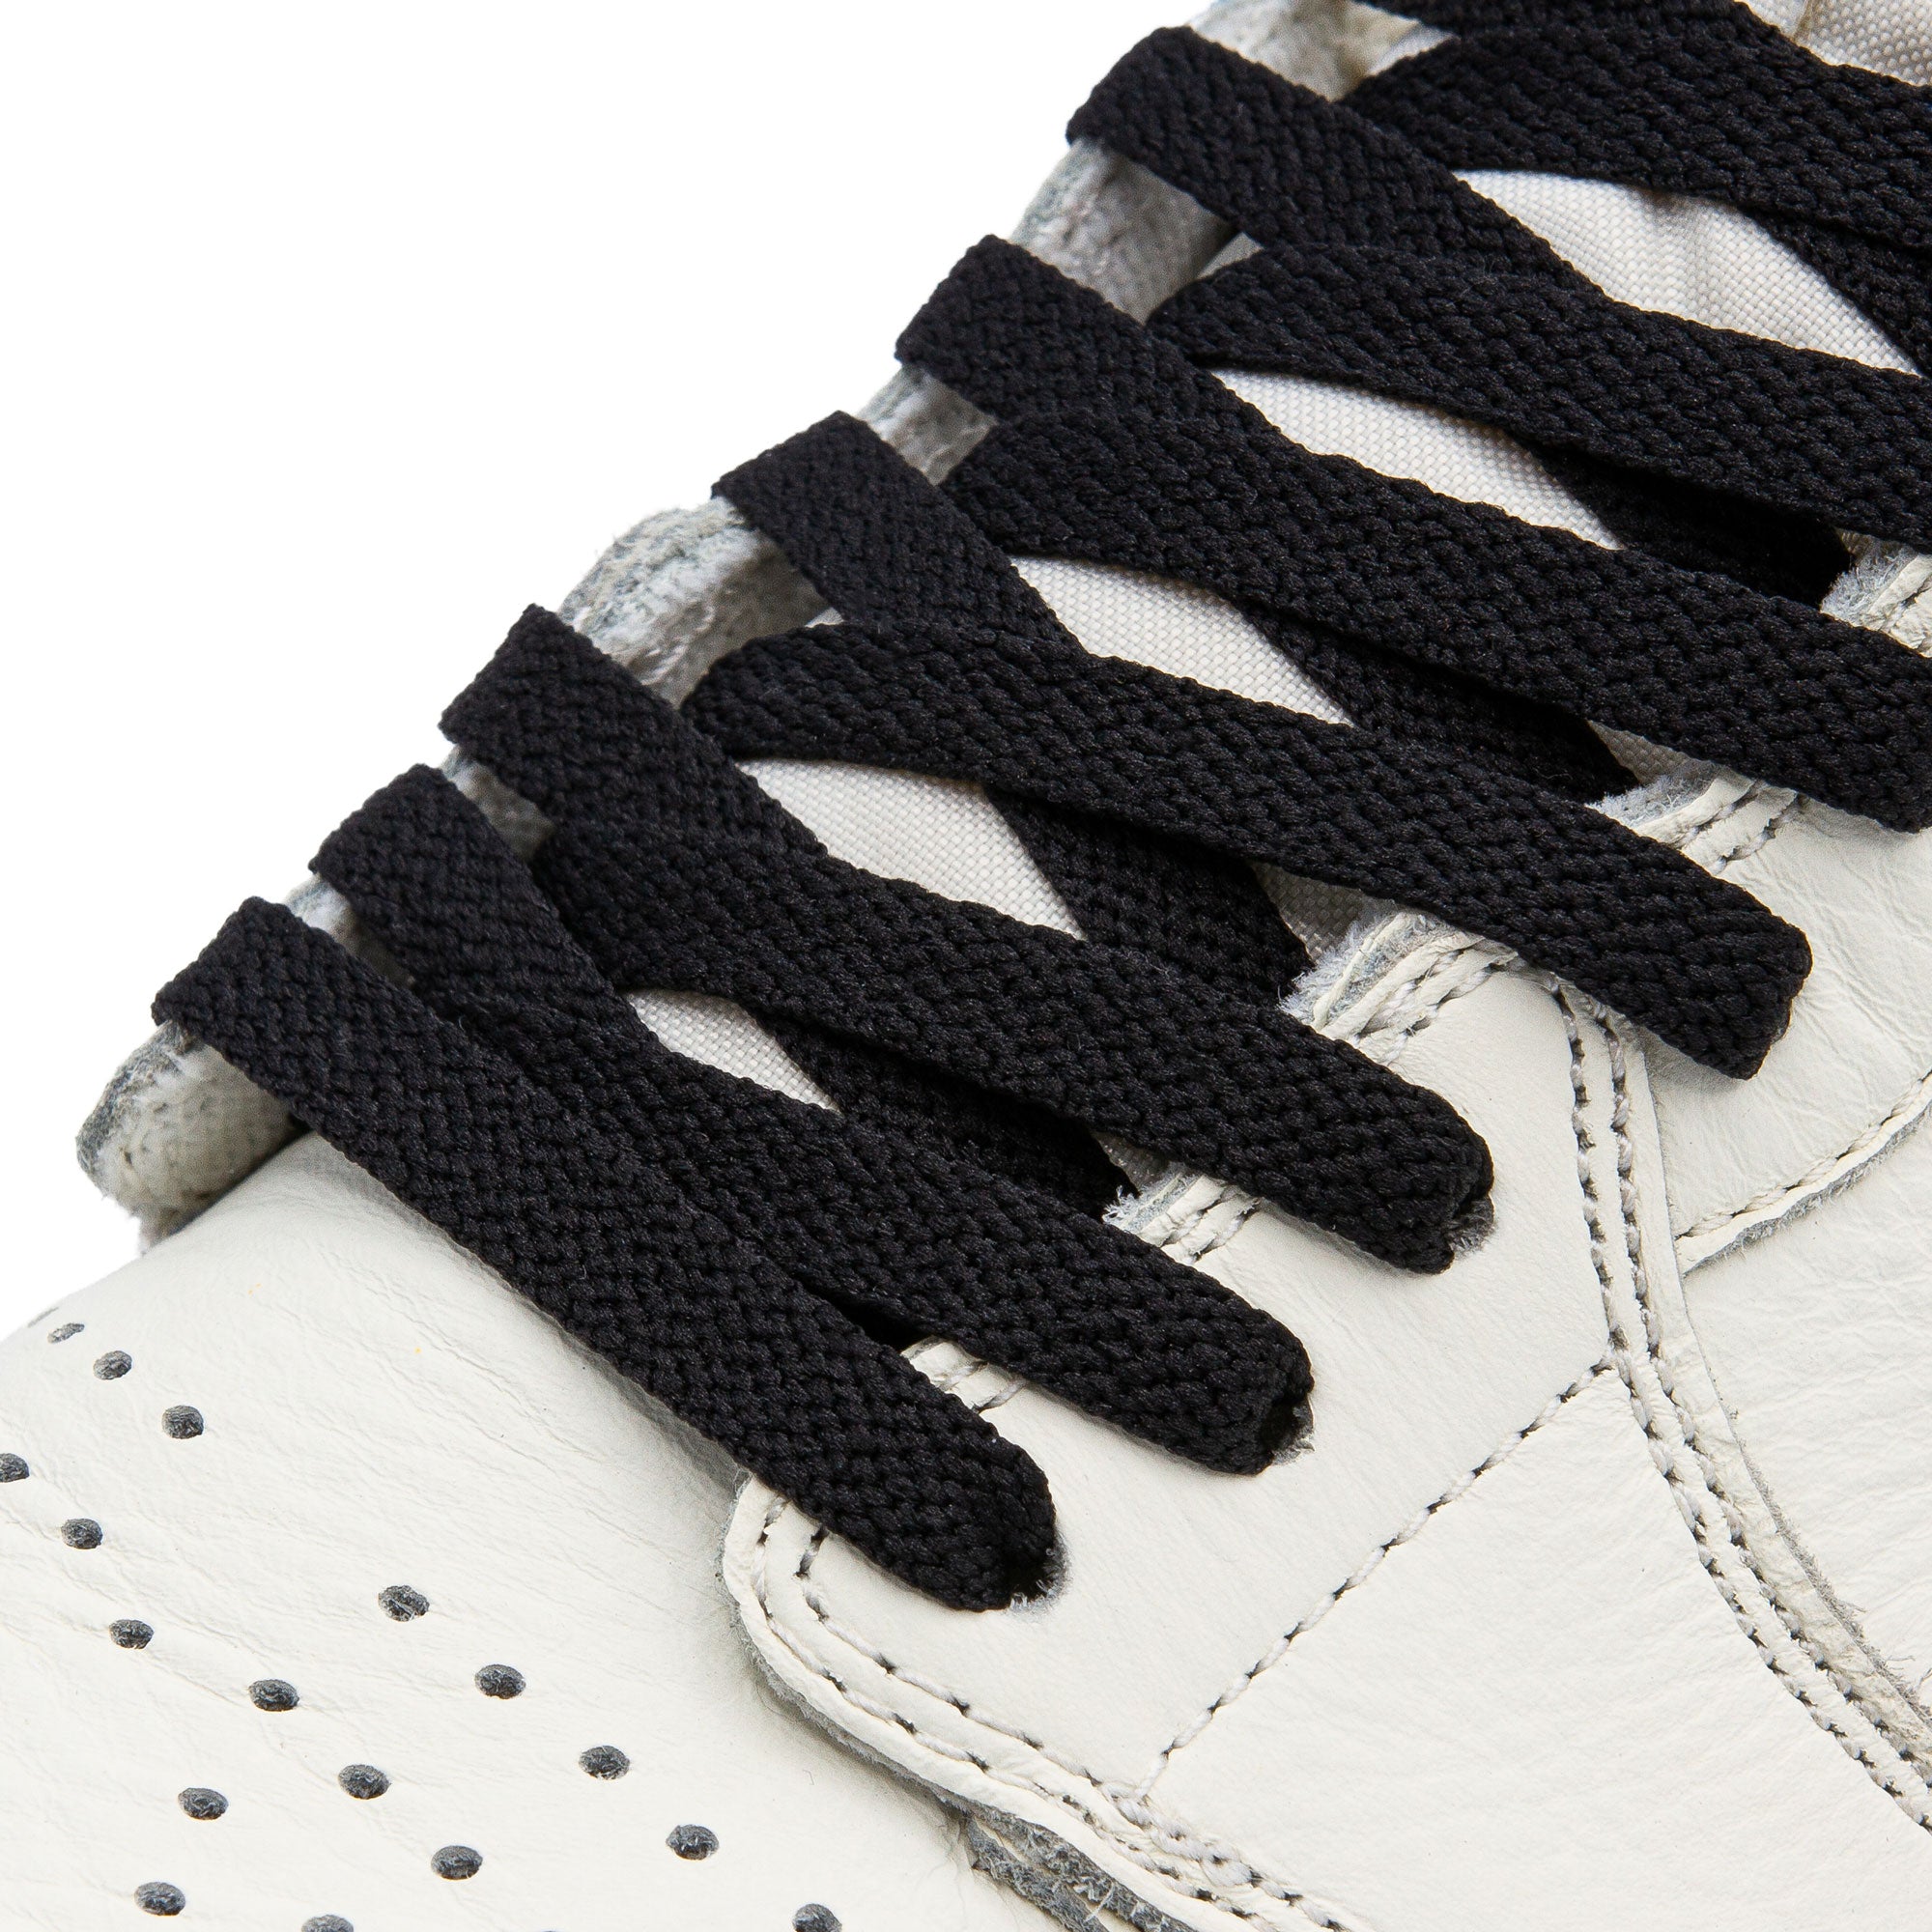 Black Jordan 1 Replacement Shoelaces | Shoe Laces